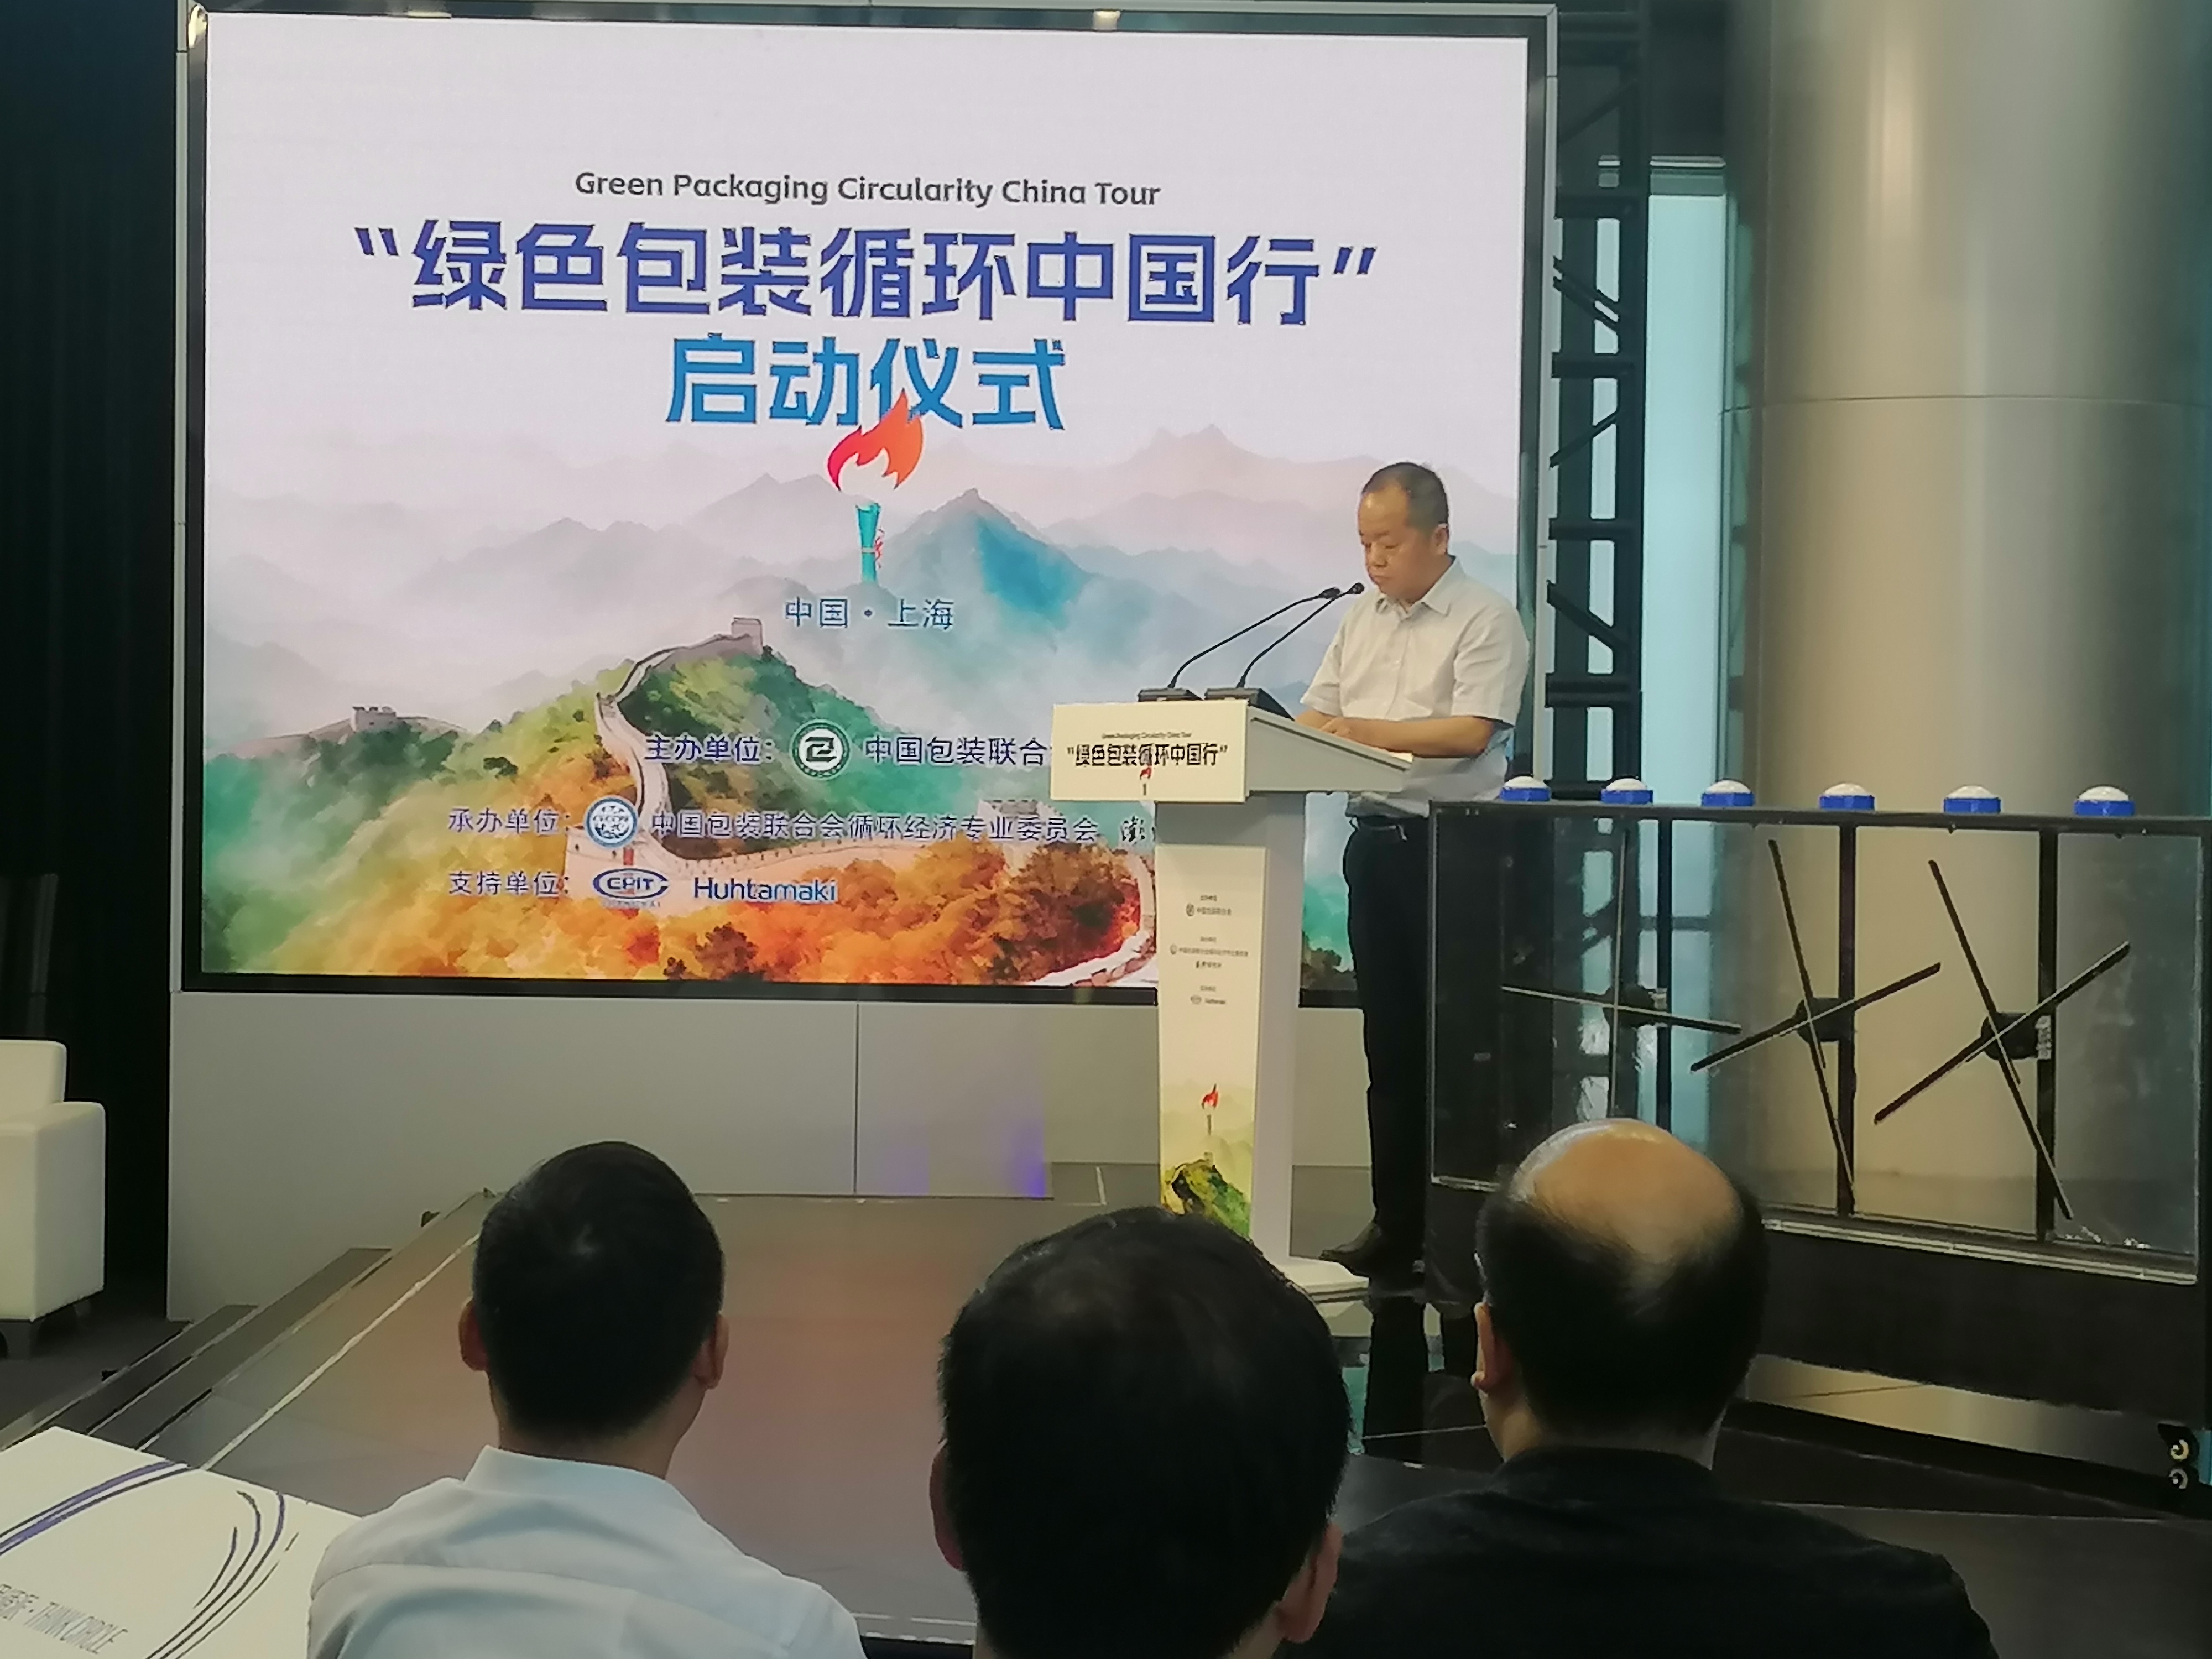 “绿色包装循环中国行”项目在上海正式启动